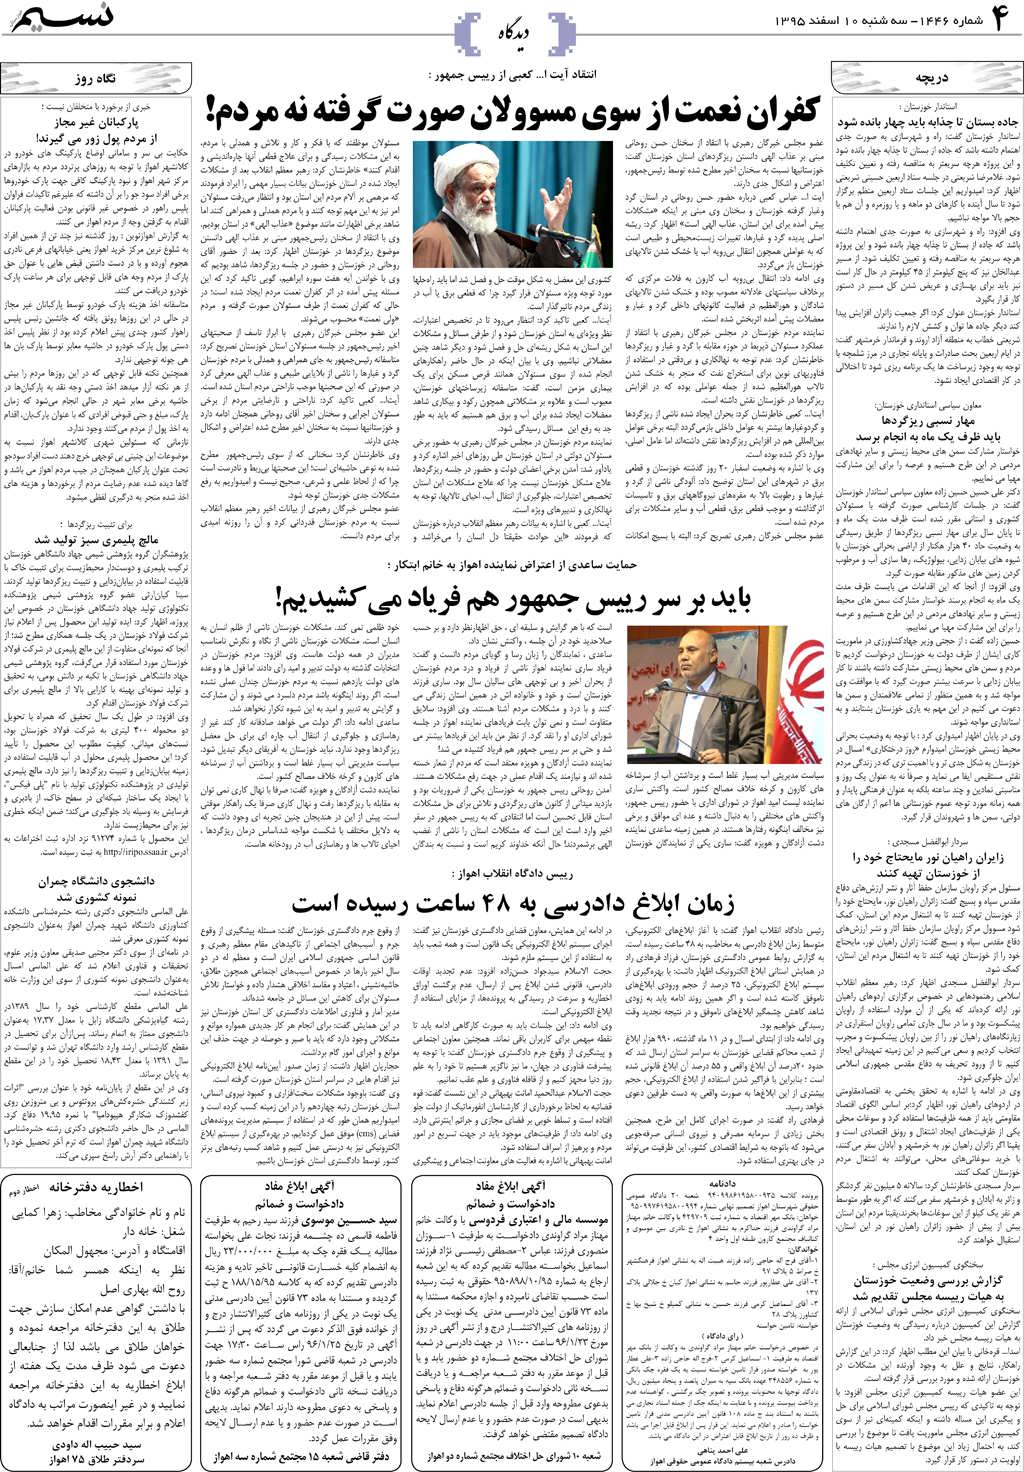 صفحه دیدگاه روزنامه نسیم شماره 1446